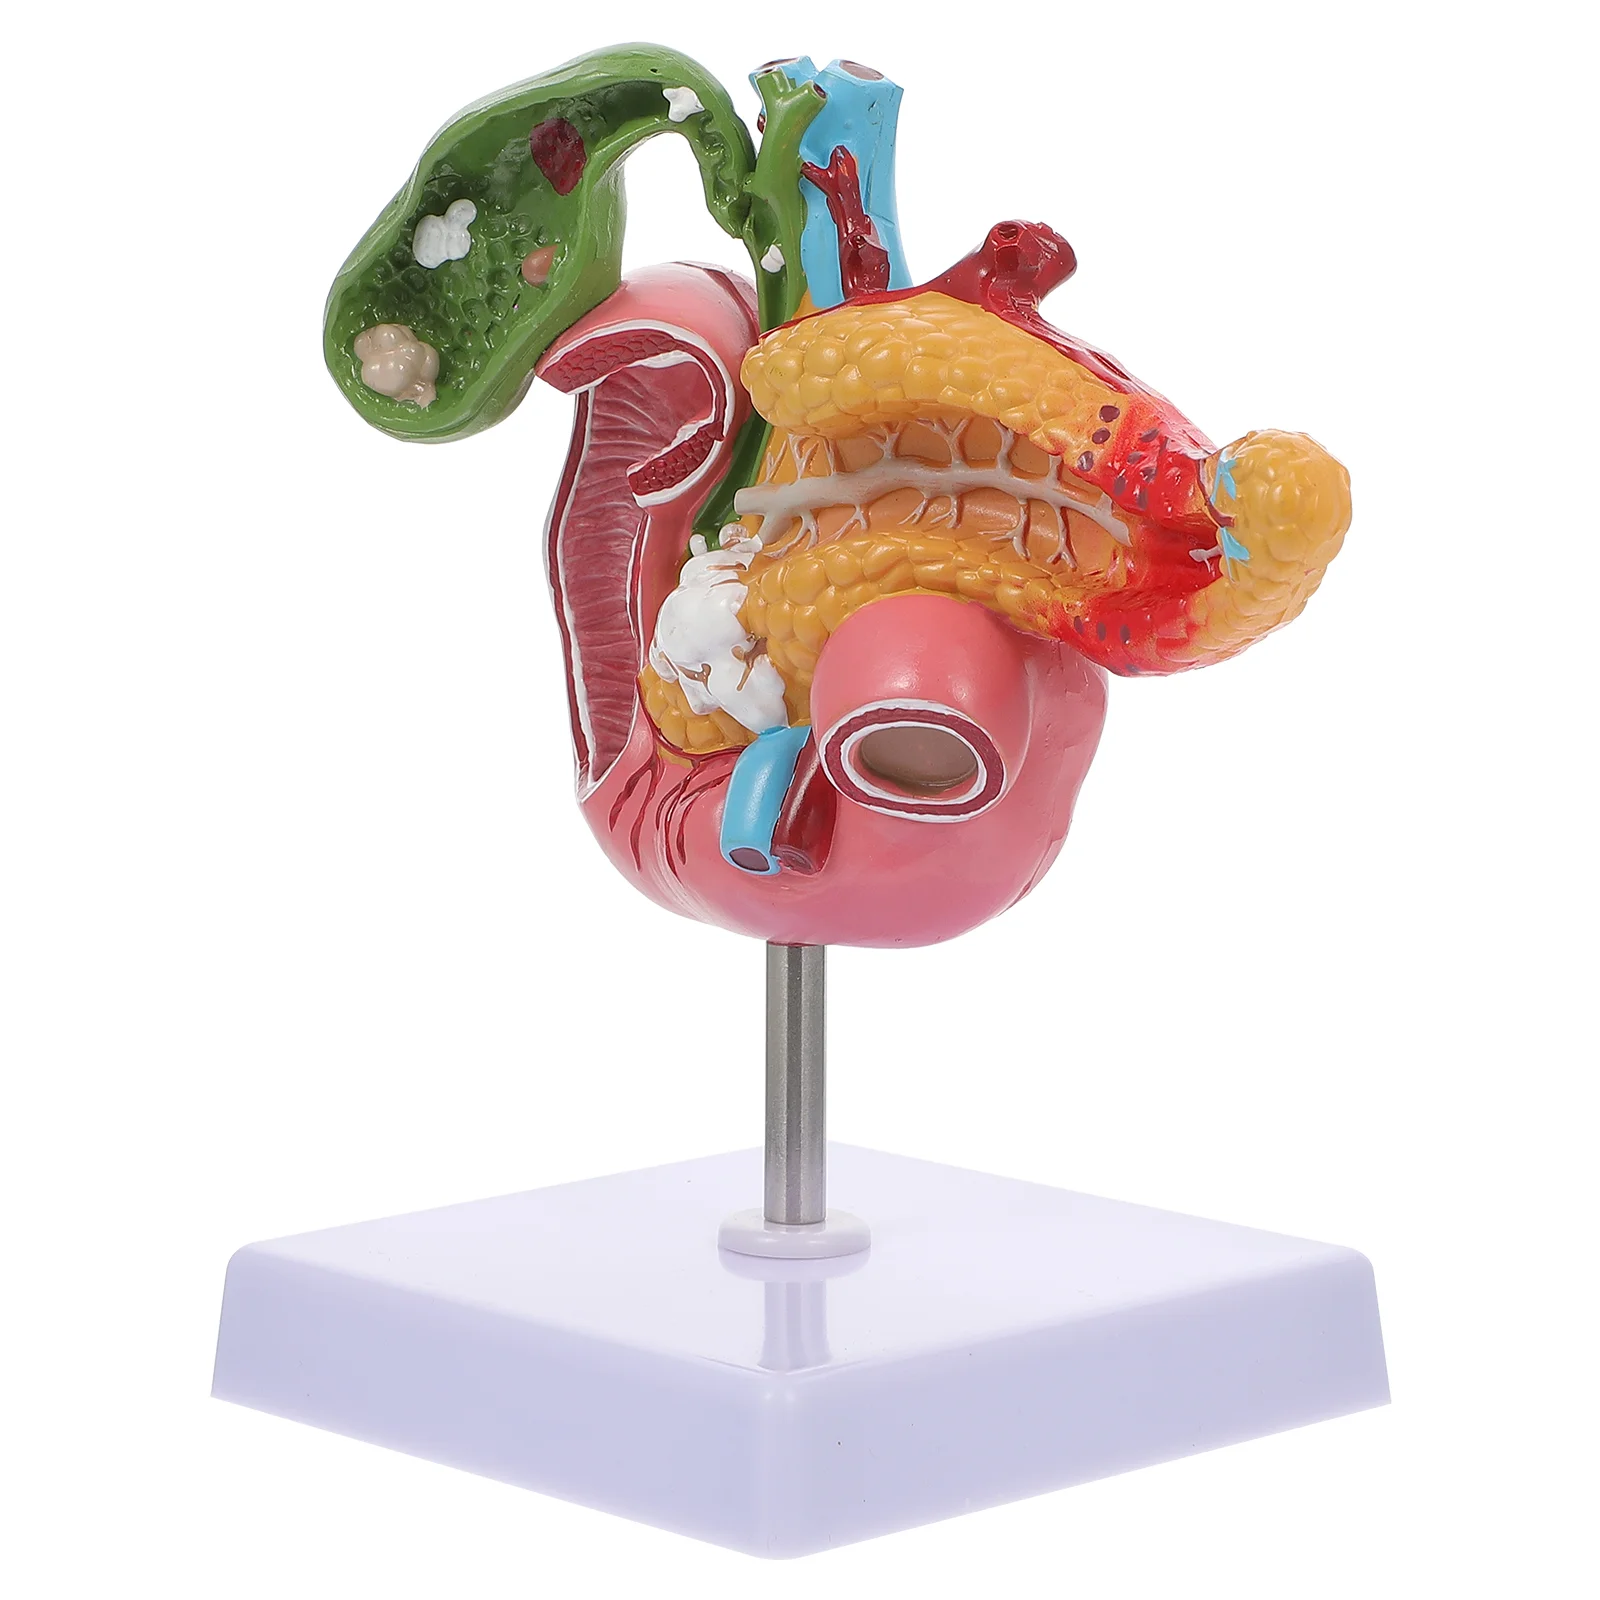 

Патологическая модель желчного пузыря и поджелудочной железы, анатомический аппарат, дуоденальный обучающий инструмент, биологический